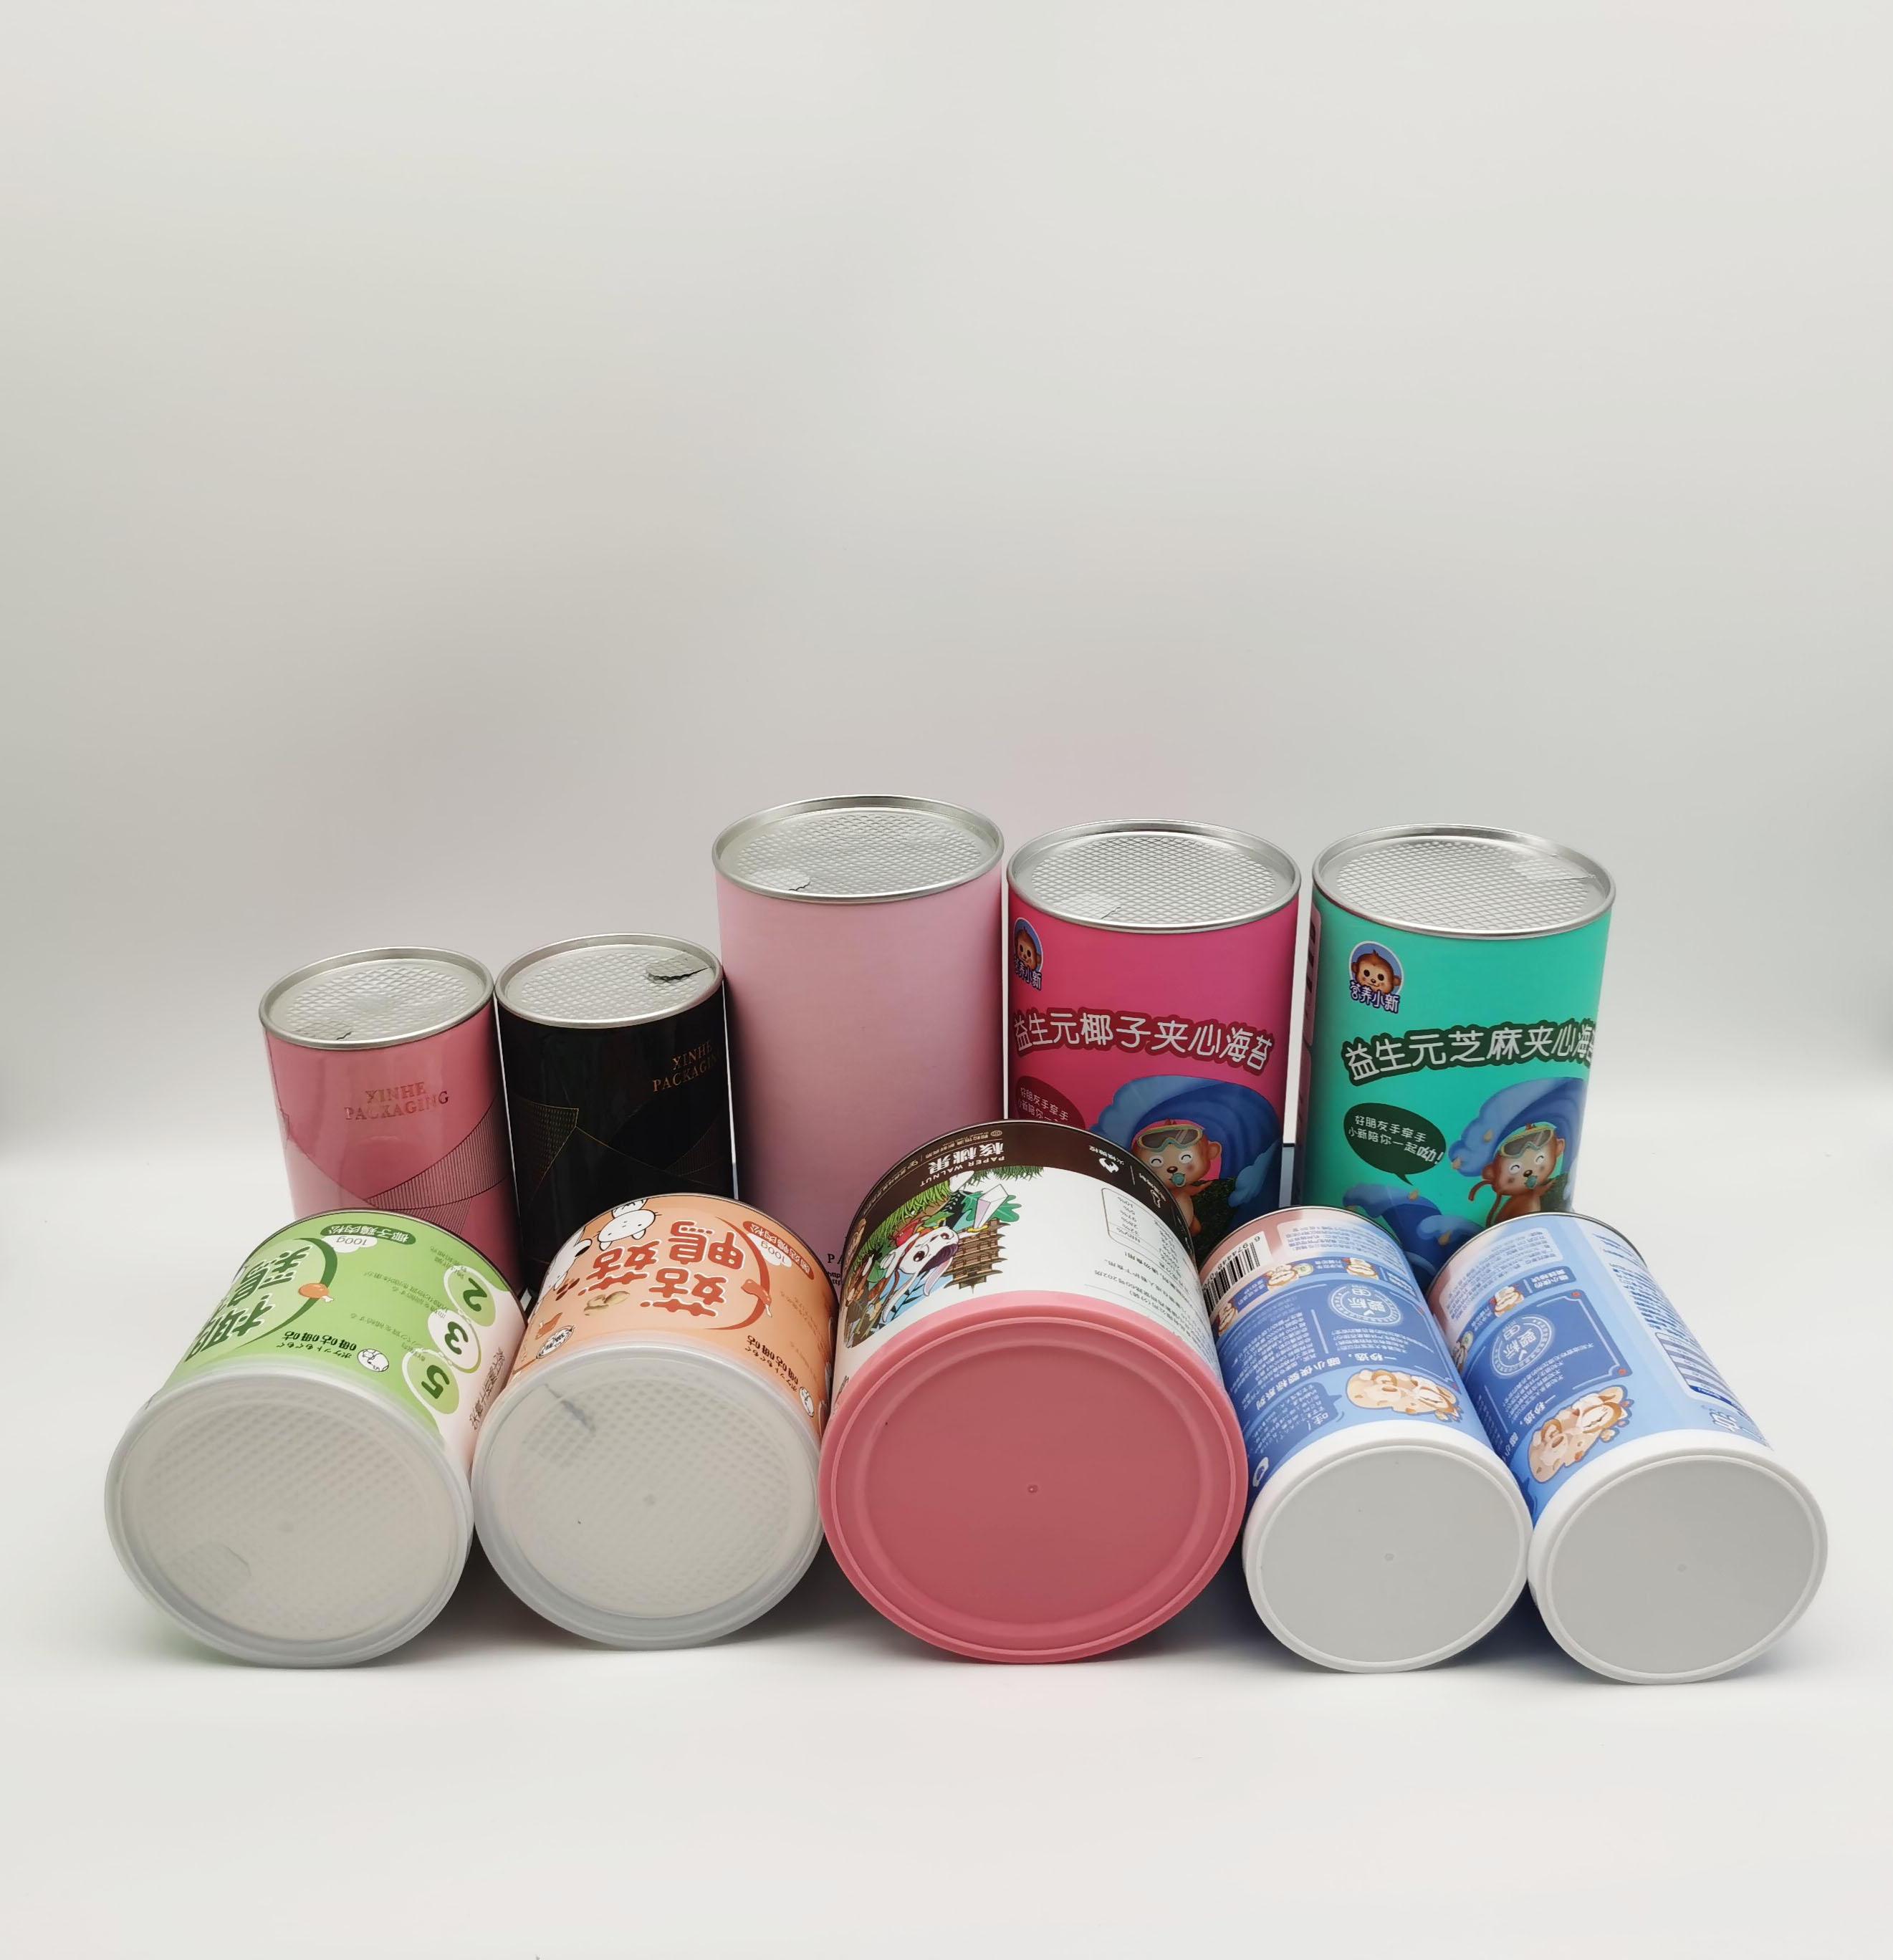 广州骏彩生产纸罐 易拉纸罐 扣盖纸罐 食品纸罐